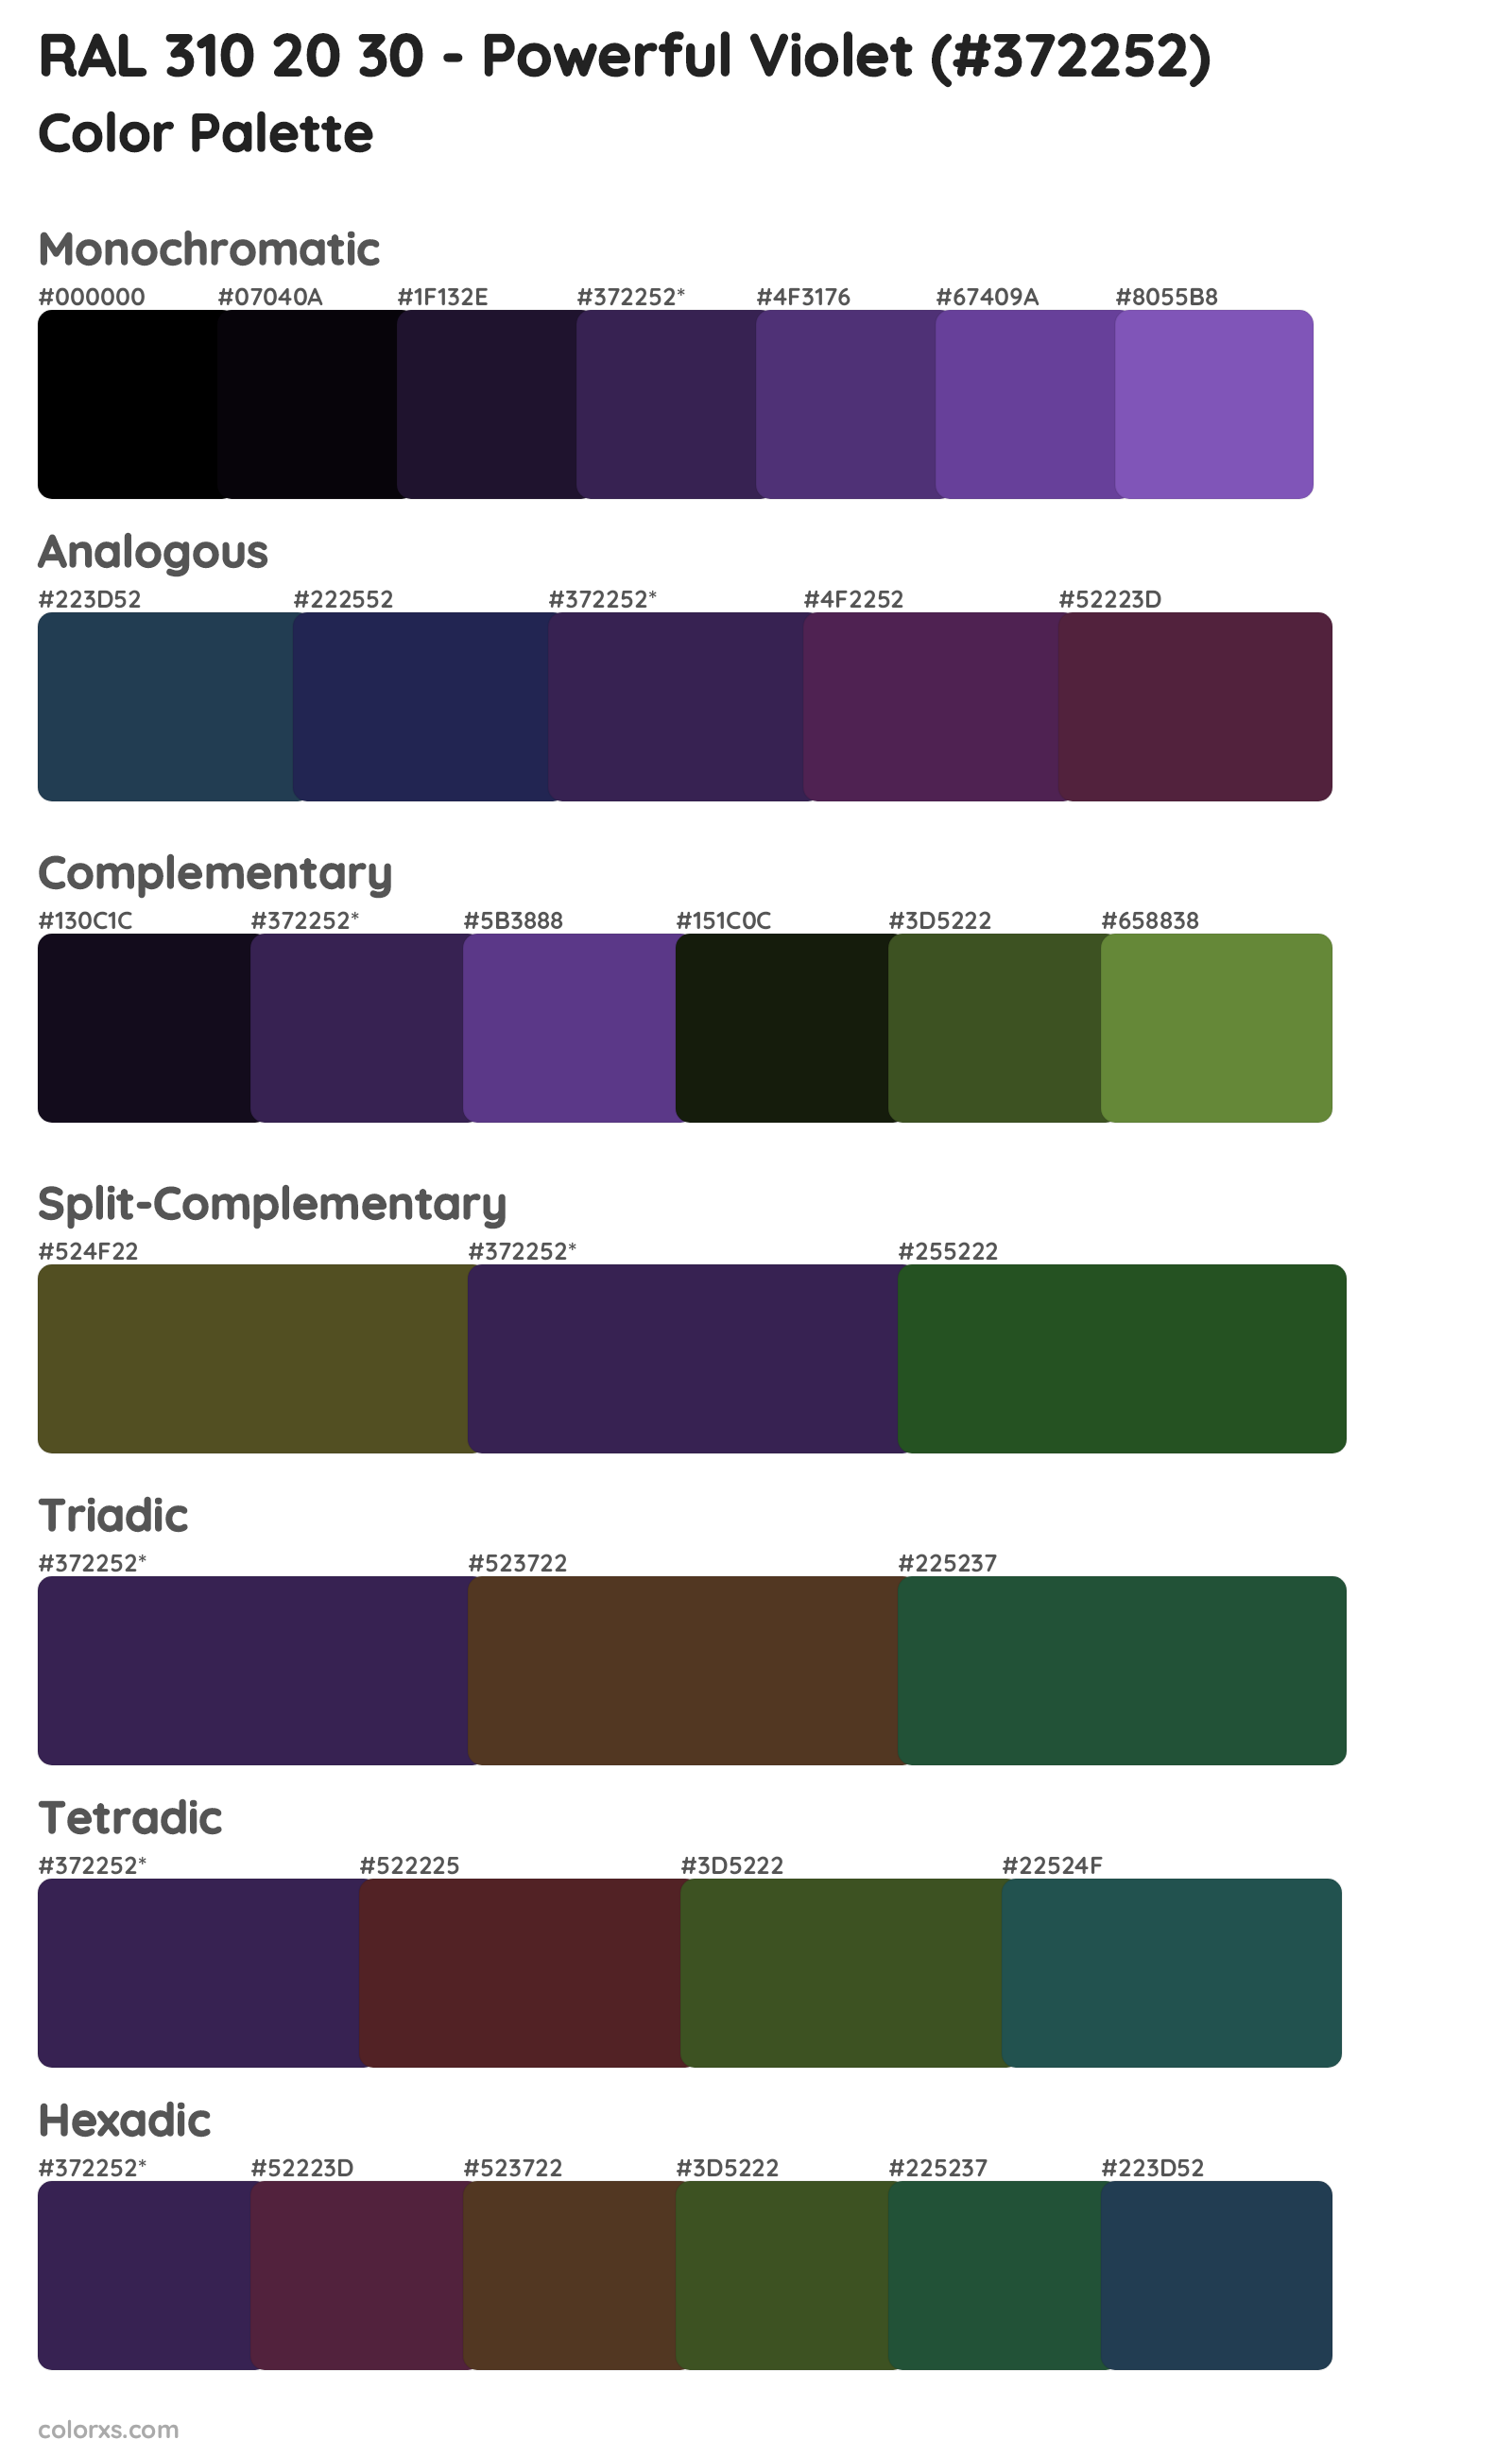 RAL 310 20 30 - Powerful Violet Color Scheme Palettes